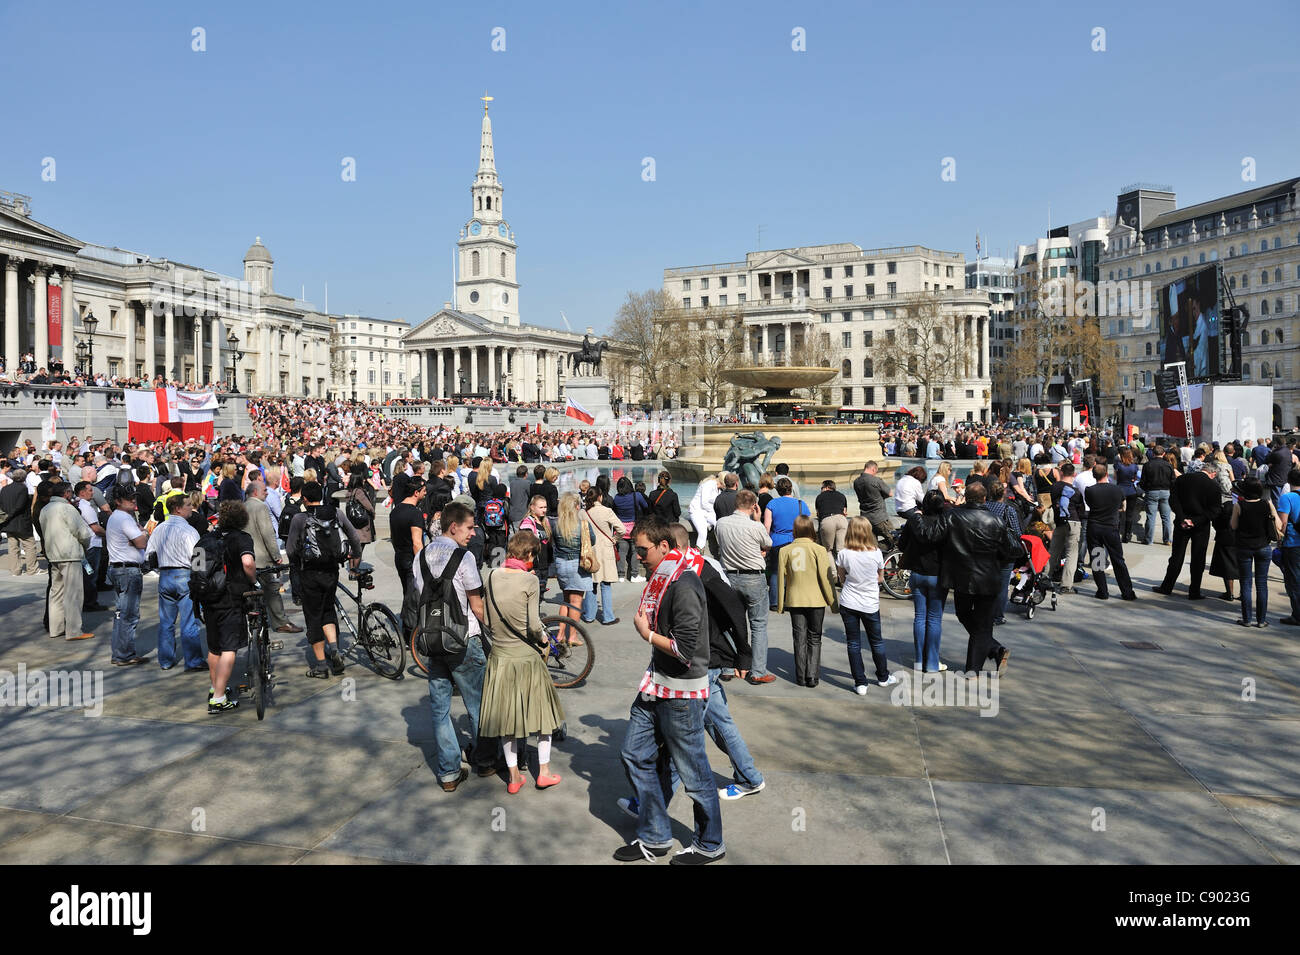 Les gens se sont réunis pour assister aux funérailles du président polonais Lech Kaczynski sur ses écrans de télévision, avril 2010, Trafalgar Square, Londres, UK Banque D'Images